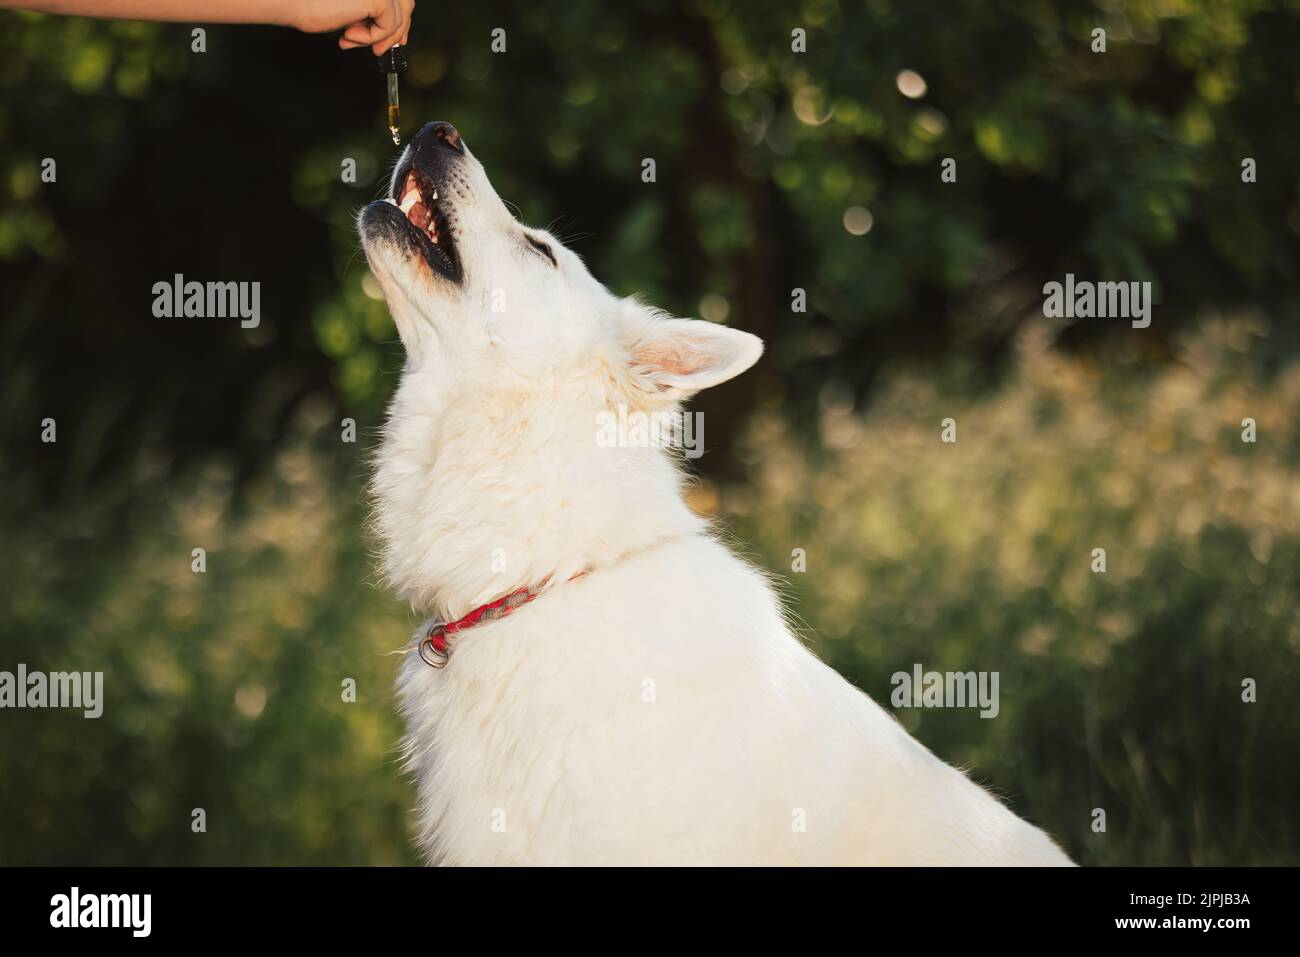 Hund, der CBD-Öl direkt in den Mund nimmt, indem er eine Pipette leckt, die mit einem Produkt auf Hanfbasis gefüllt ist Stockfoto